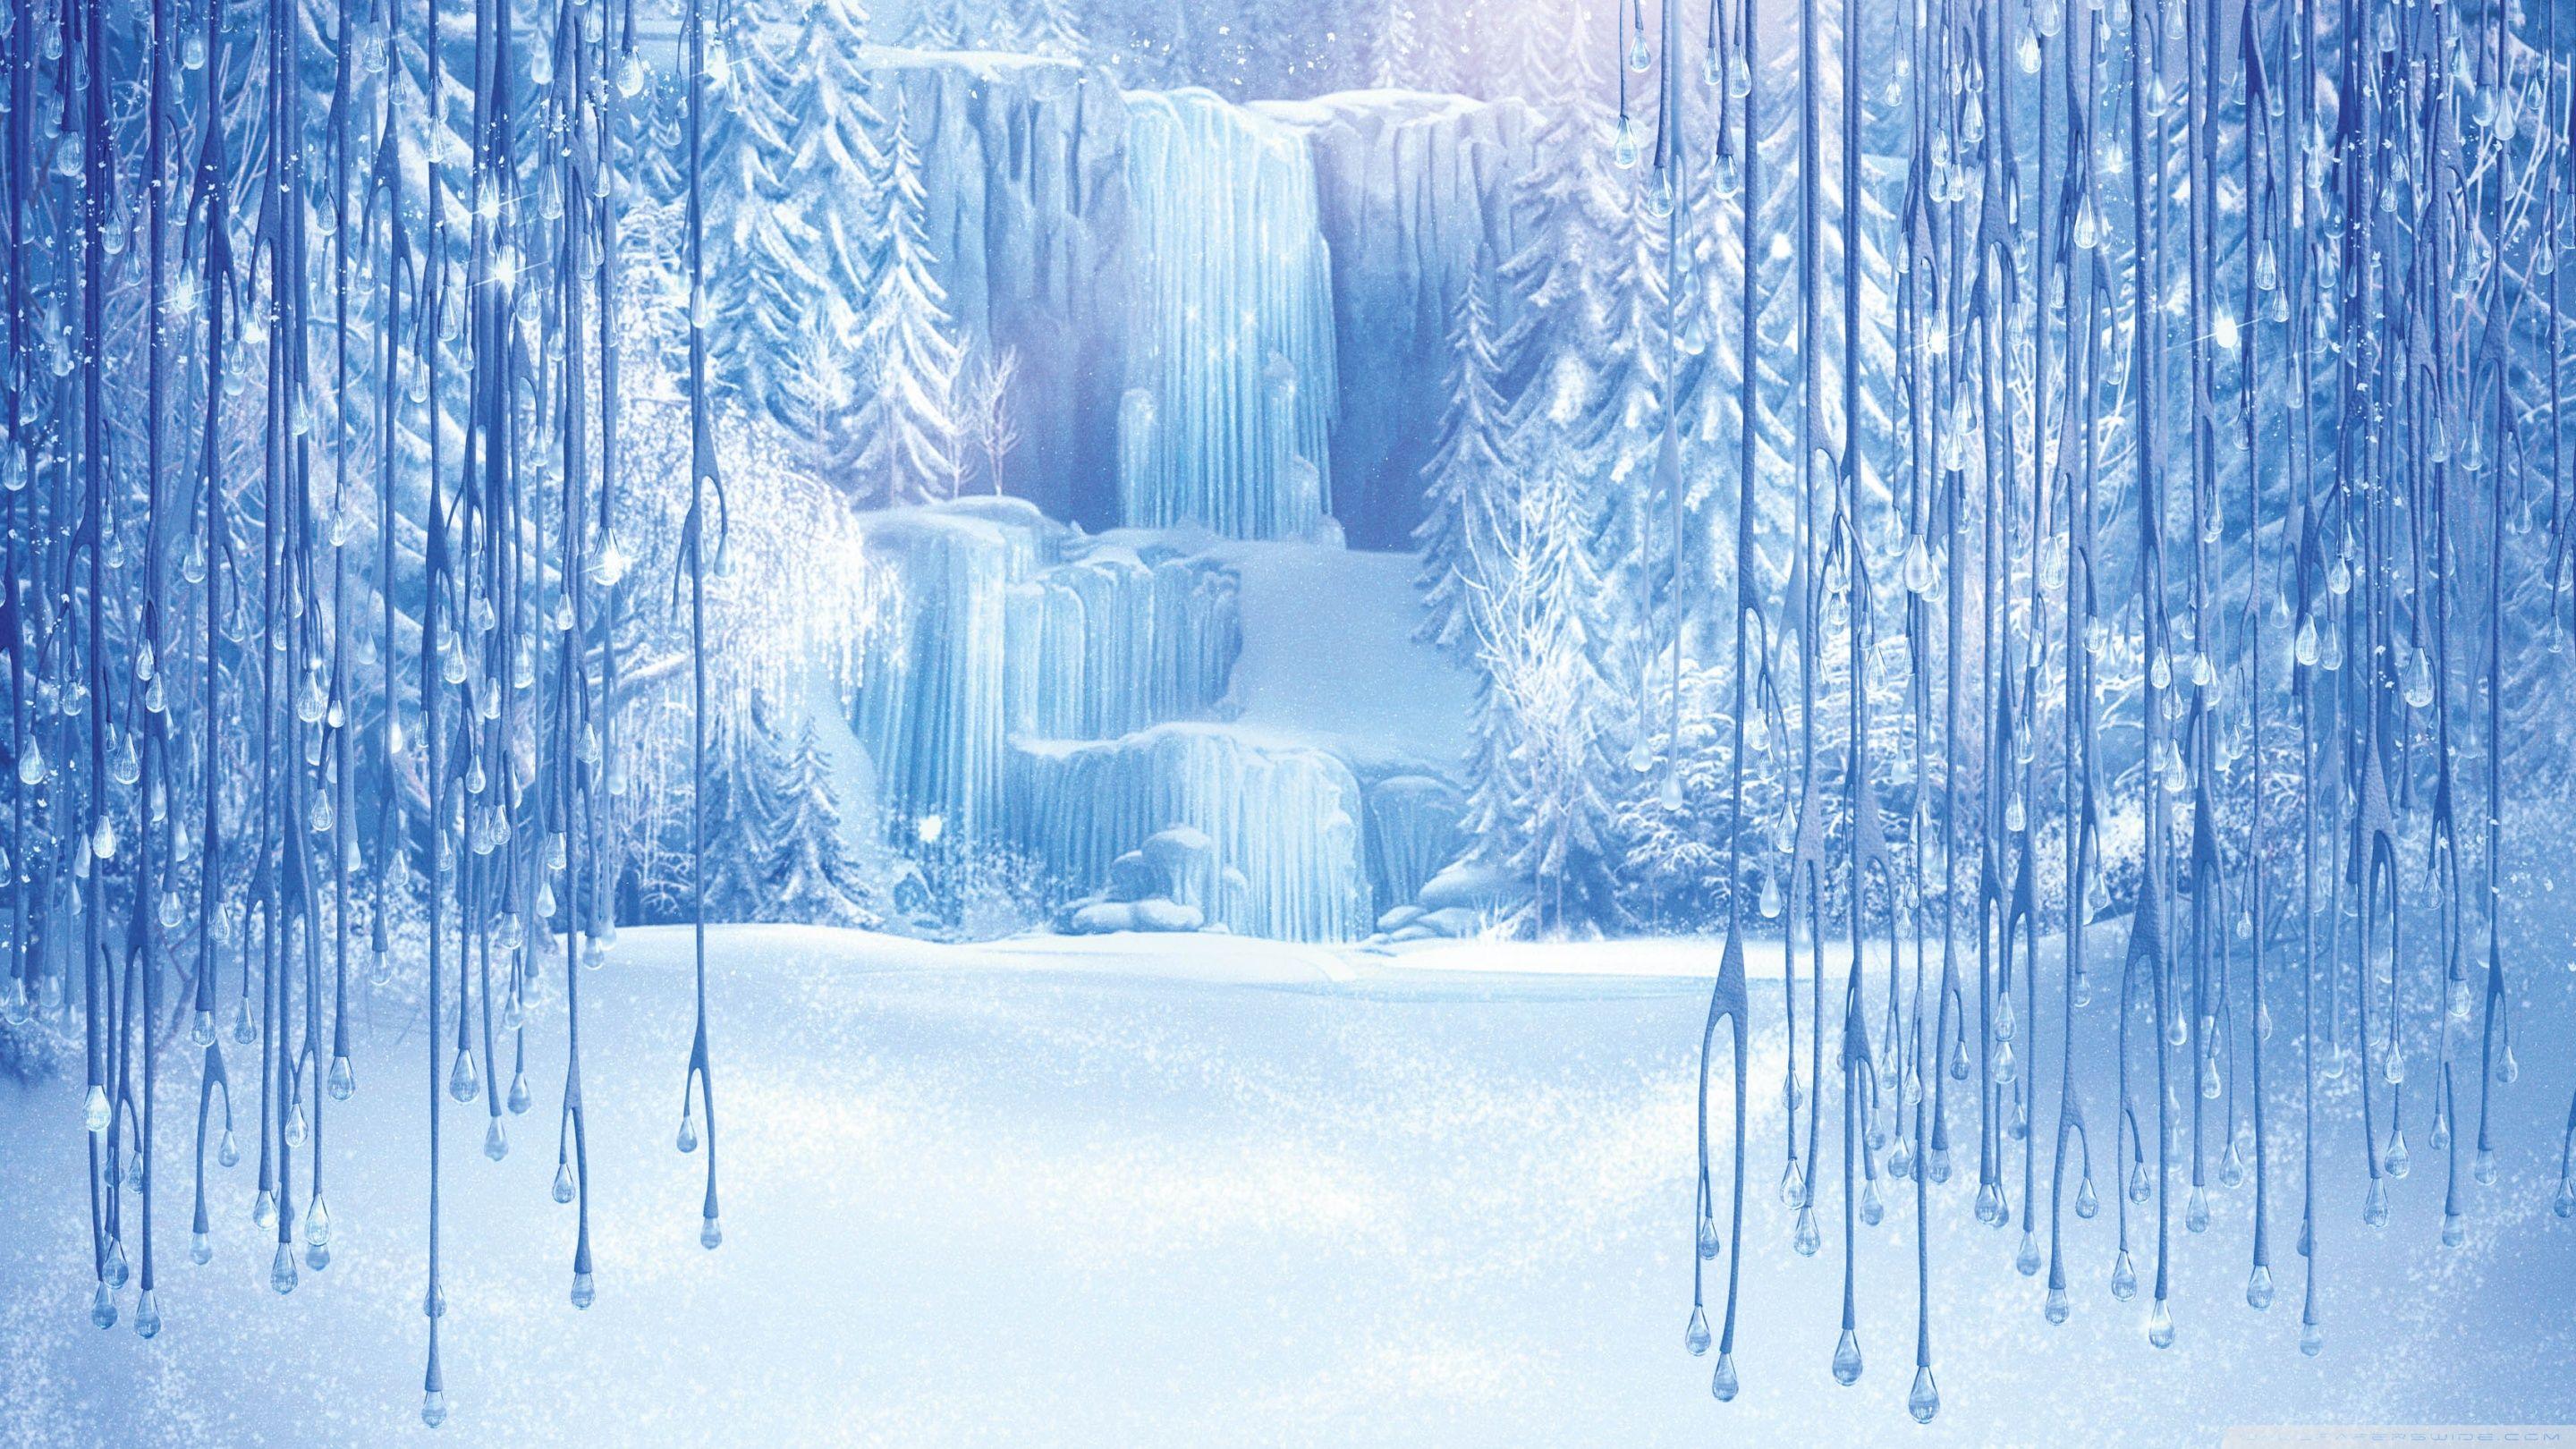 Frozen Disney Wallpapers Wallpaper Cave